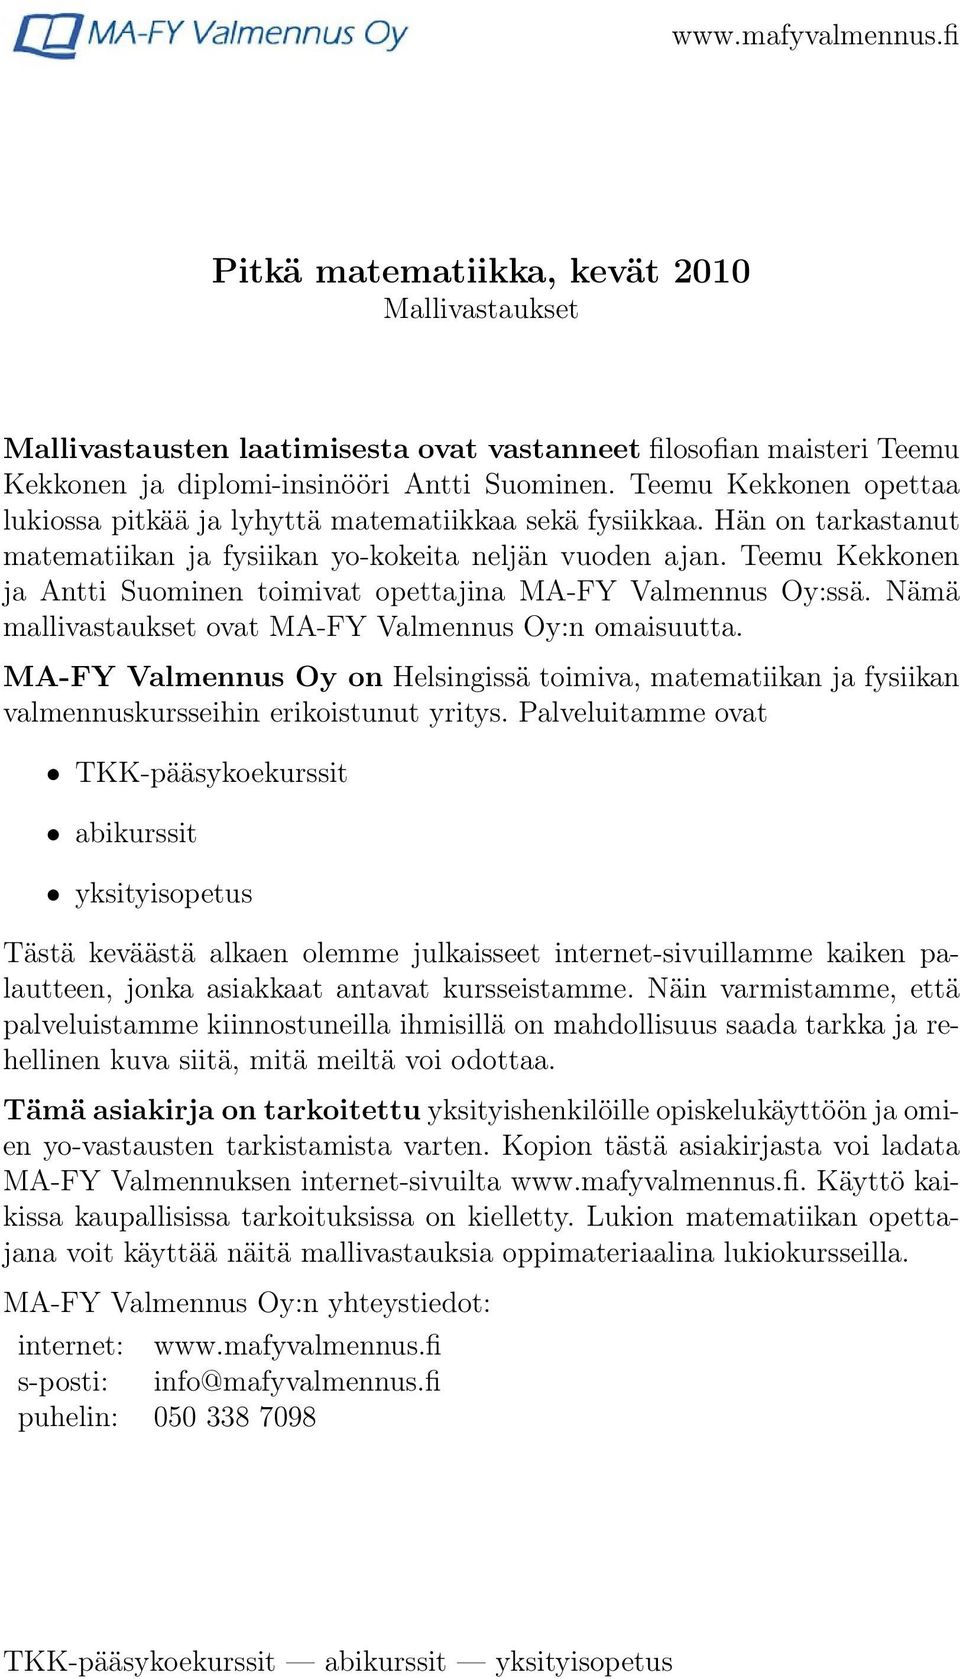 Teemu Kekkonen ja Antti Suominen toimivat opettajina MA-FY Valmennus Oy:ssä. Nämä mallivastaukset ovat MA-FY Valmennus Oy:n omaisuutta.